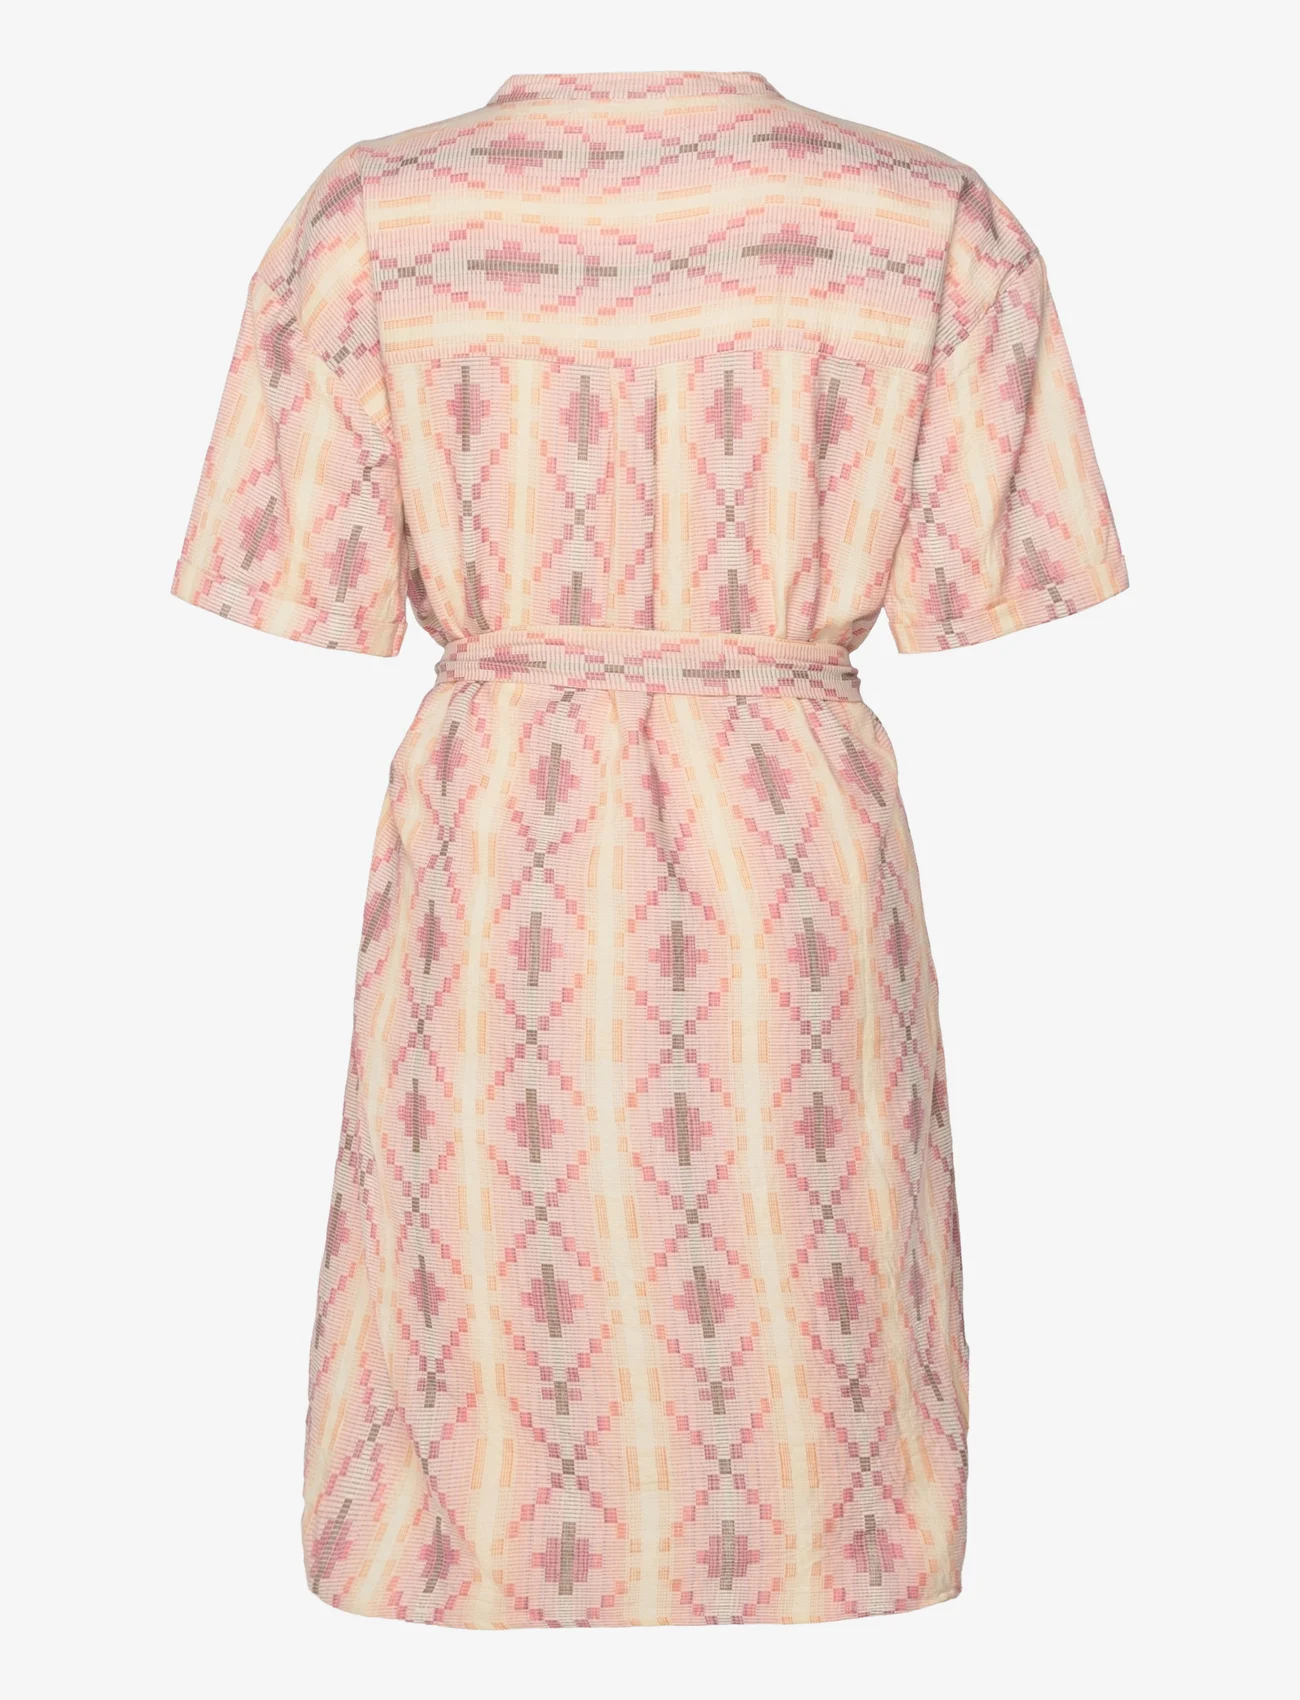 Sofie Schnoor - Dress - marškinių tipo suknelės - off white pink - 1